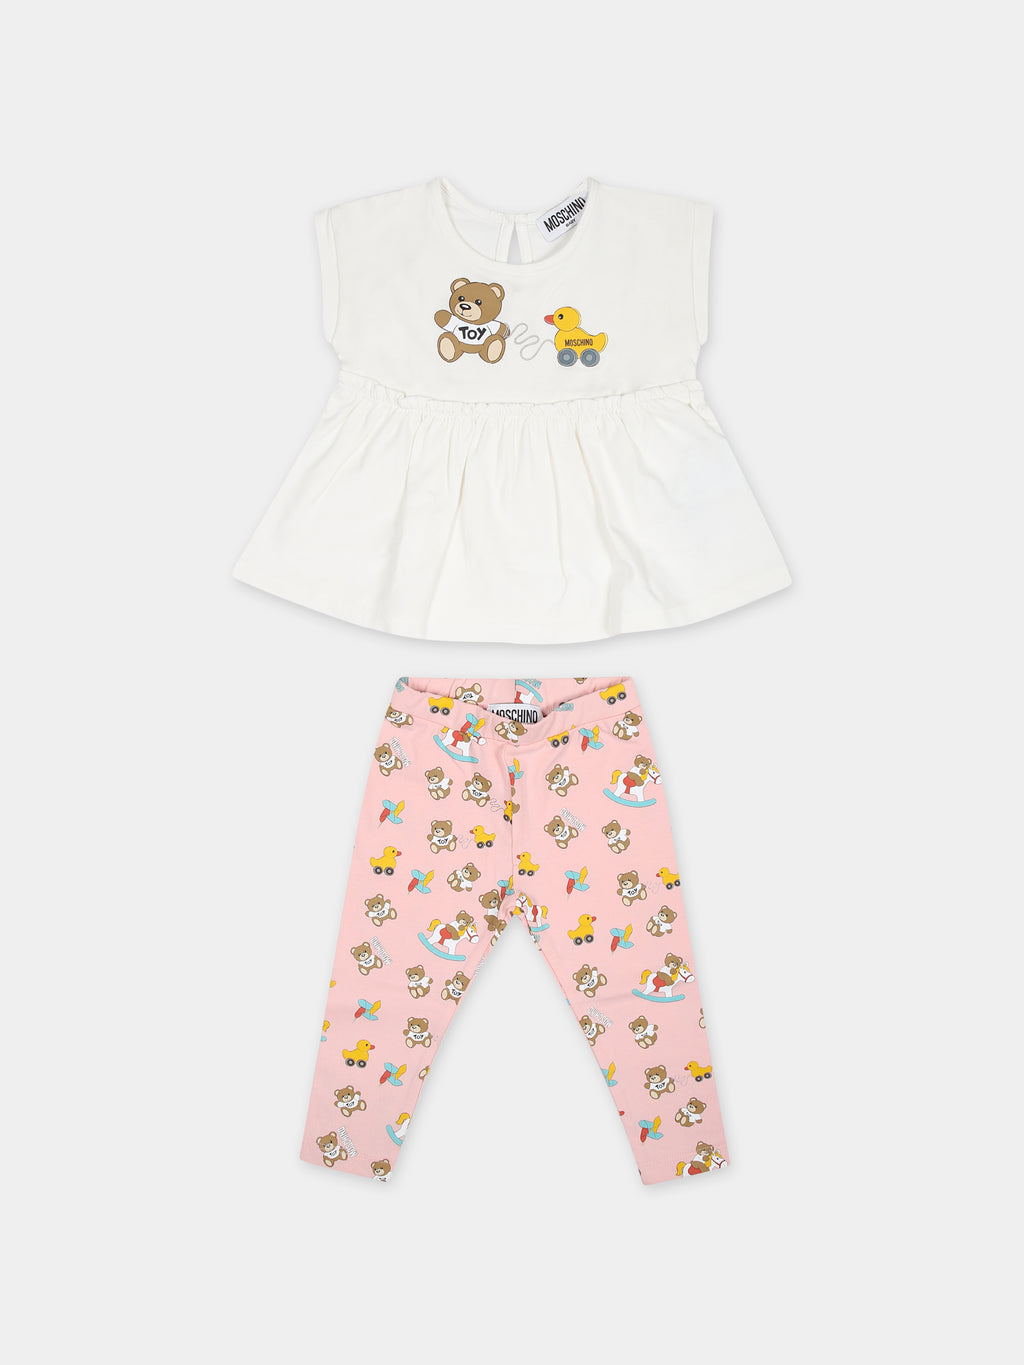 Tenue multicolore pour bébé fille avec Teddy Bear et canards